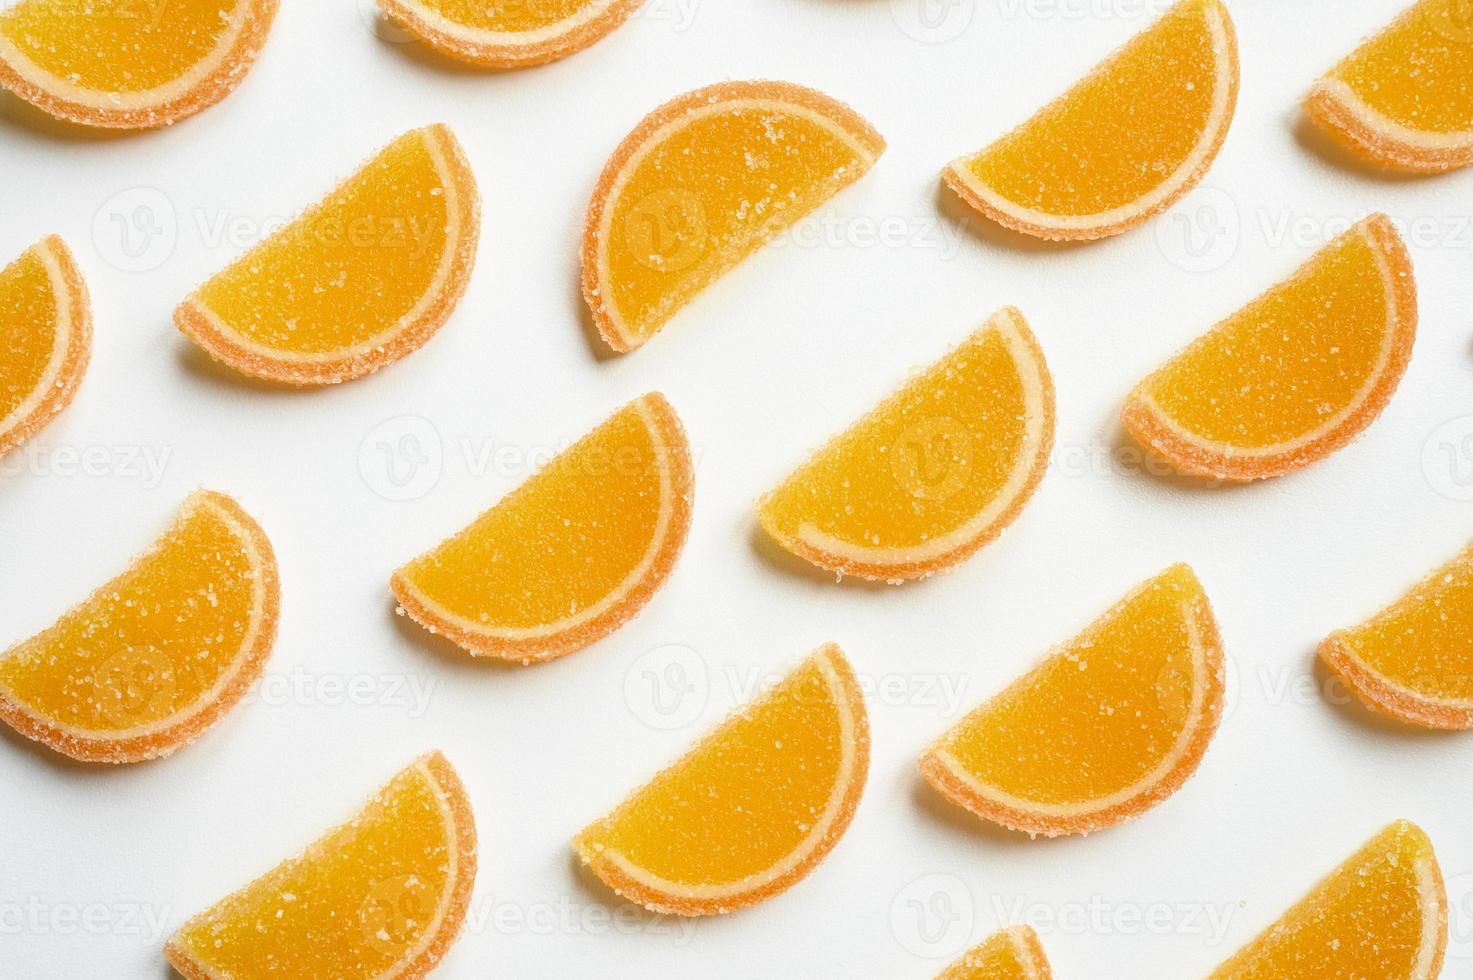 Marmeladenscheiben von Orangen lokalisiert auf einem weißen Hintergrund foto